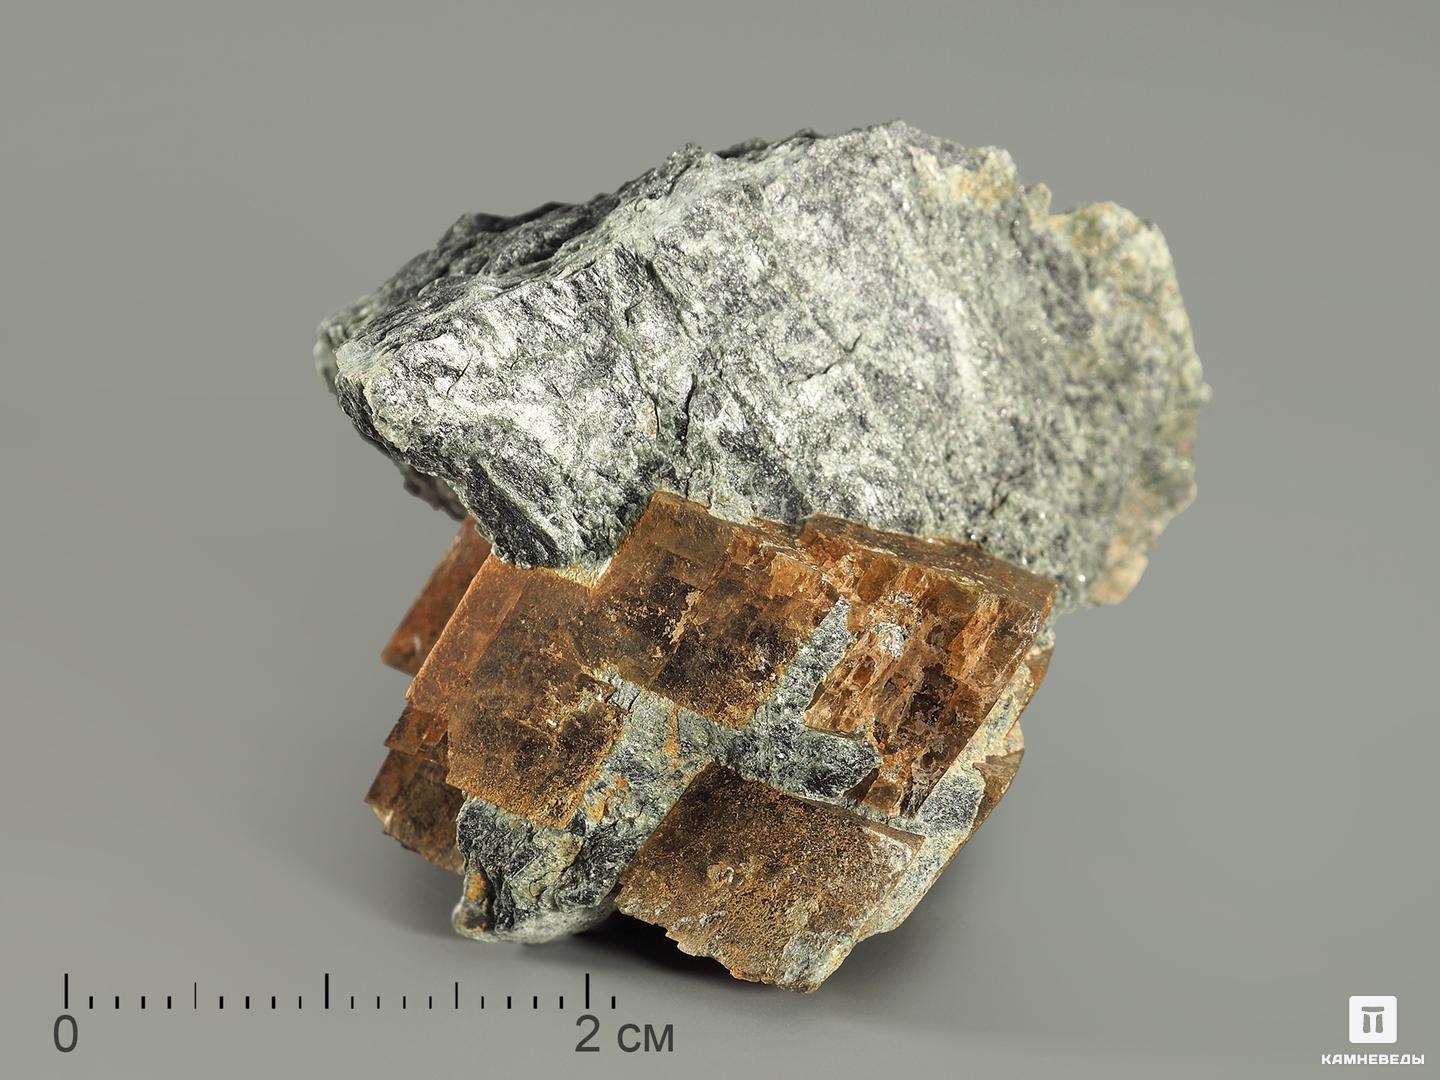 Брейнерит (железистый магнезит) в пластиковом боксе, 3-5 см, 5263, фото 2